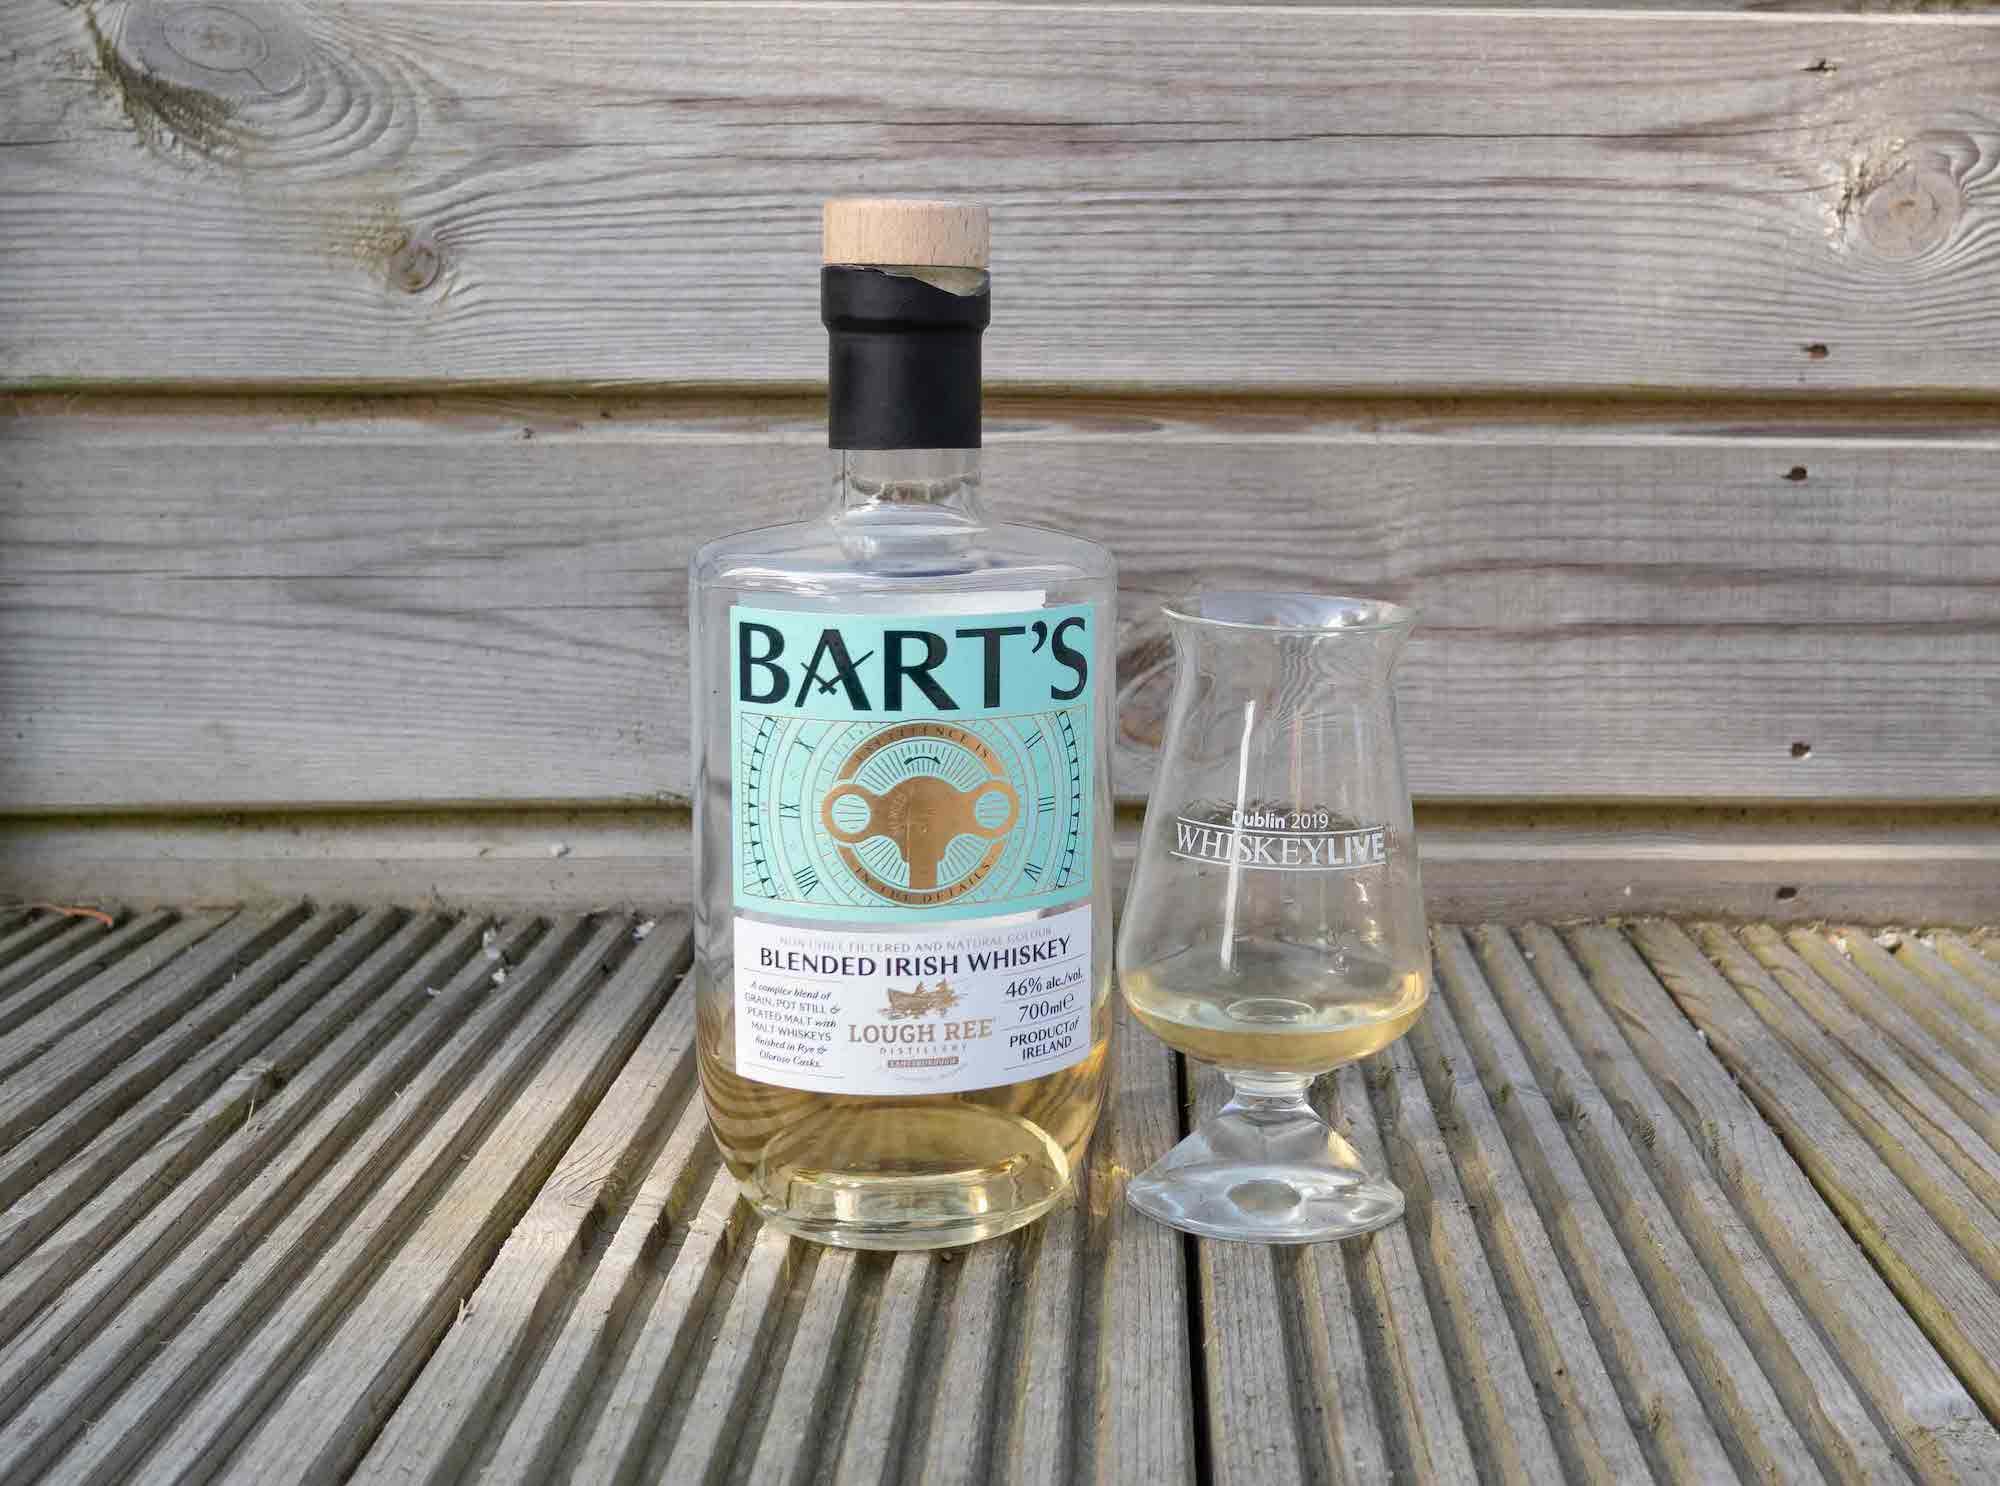 Bart’s blended Irish whiskey